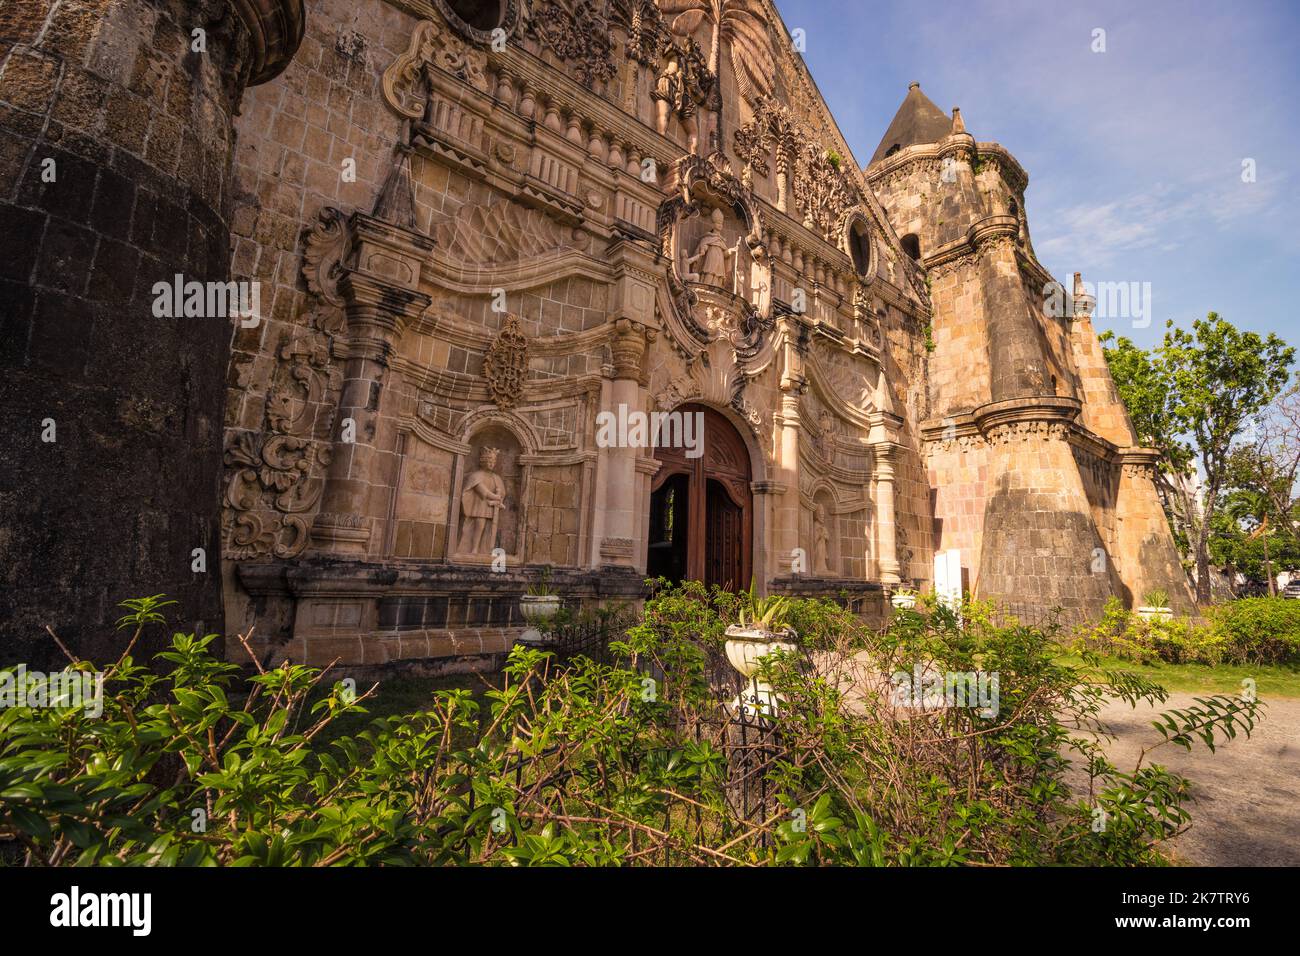 La Chiesa di Miagao, ufficialmente chiamata Chiesa Parrocchiale di Santo Tomás de Villanueva, è una fortezza barocca di epoca spagnola, cattolica romana. Patrimonio mondiale dell'UNESCO. Foto Stock